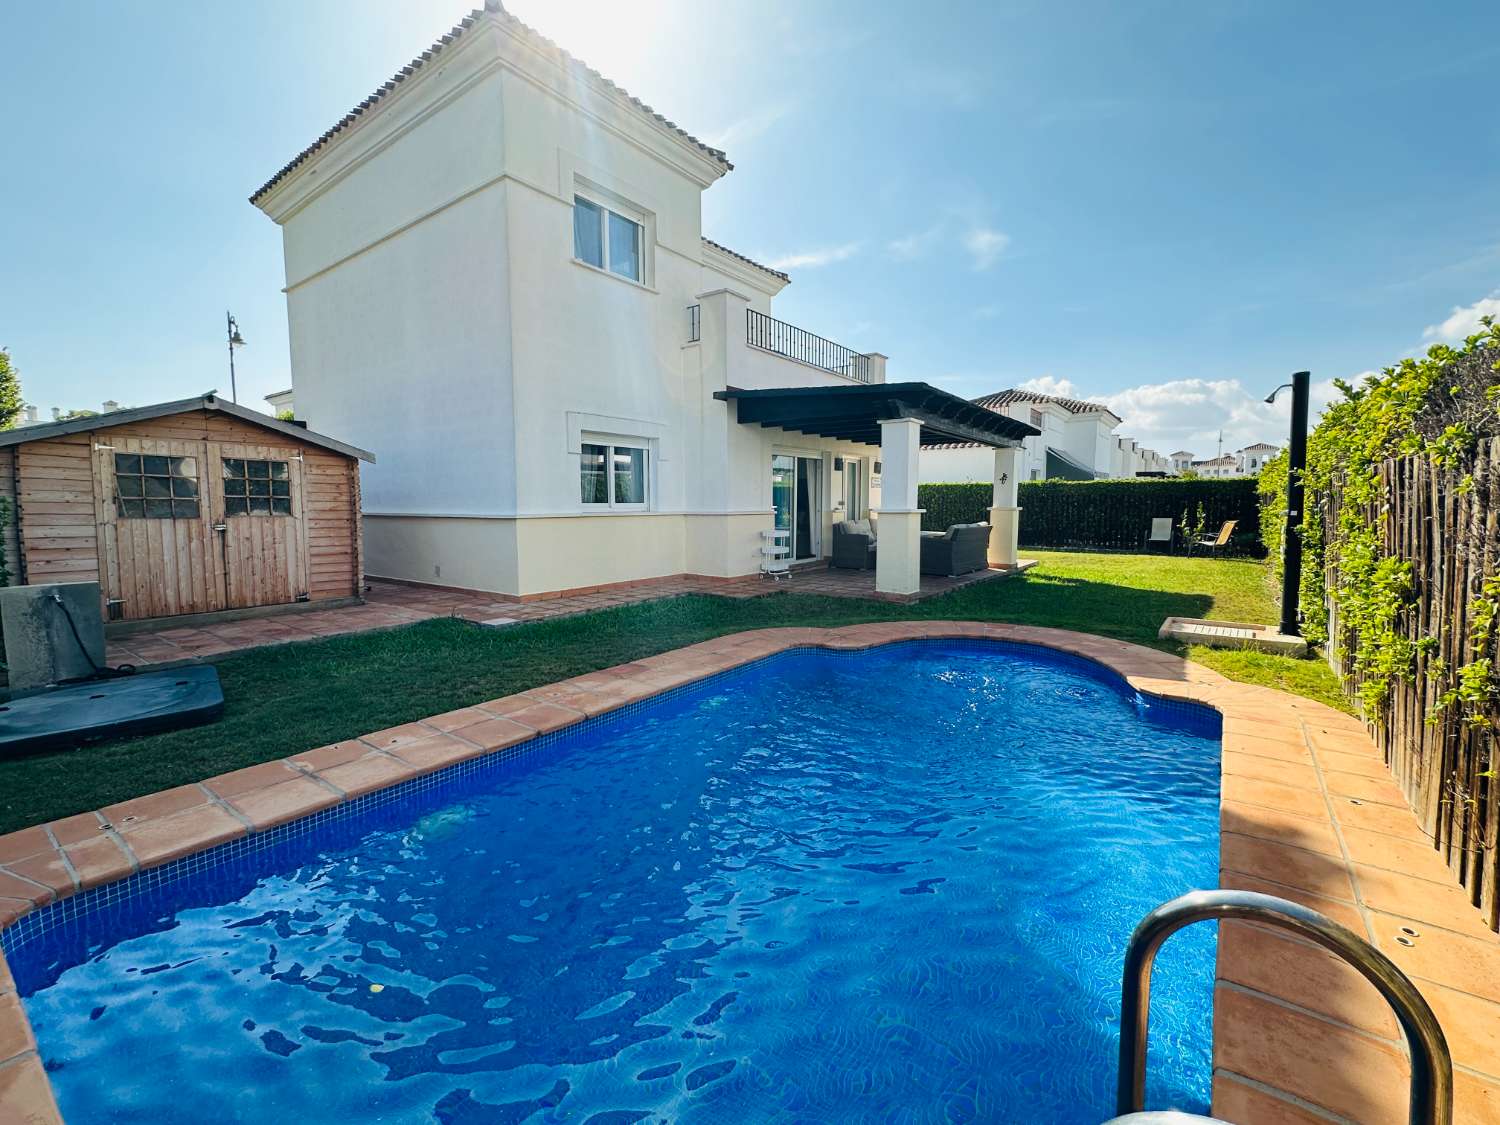 现在您可以在拉托雷高尔夫度假村购买这座带私人泳池的精美别墅